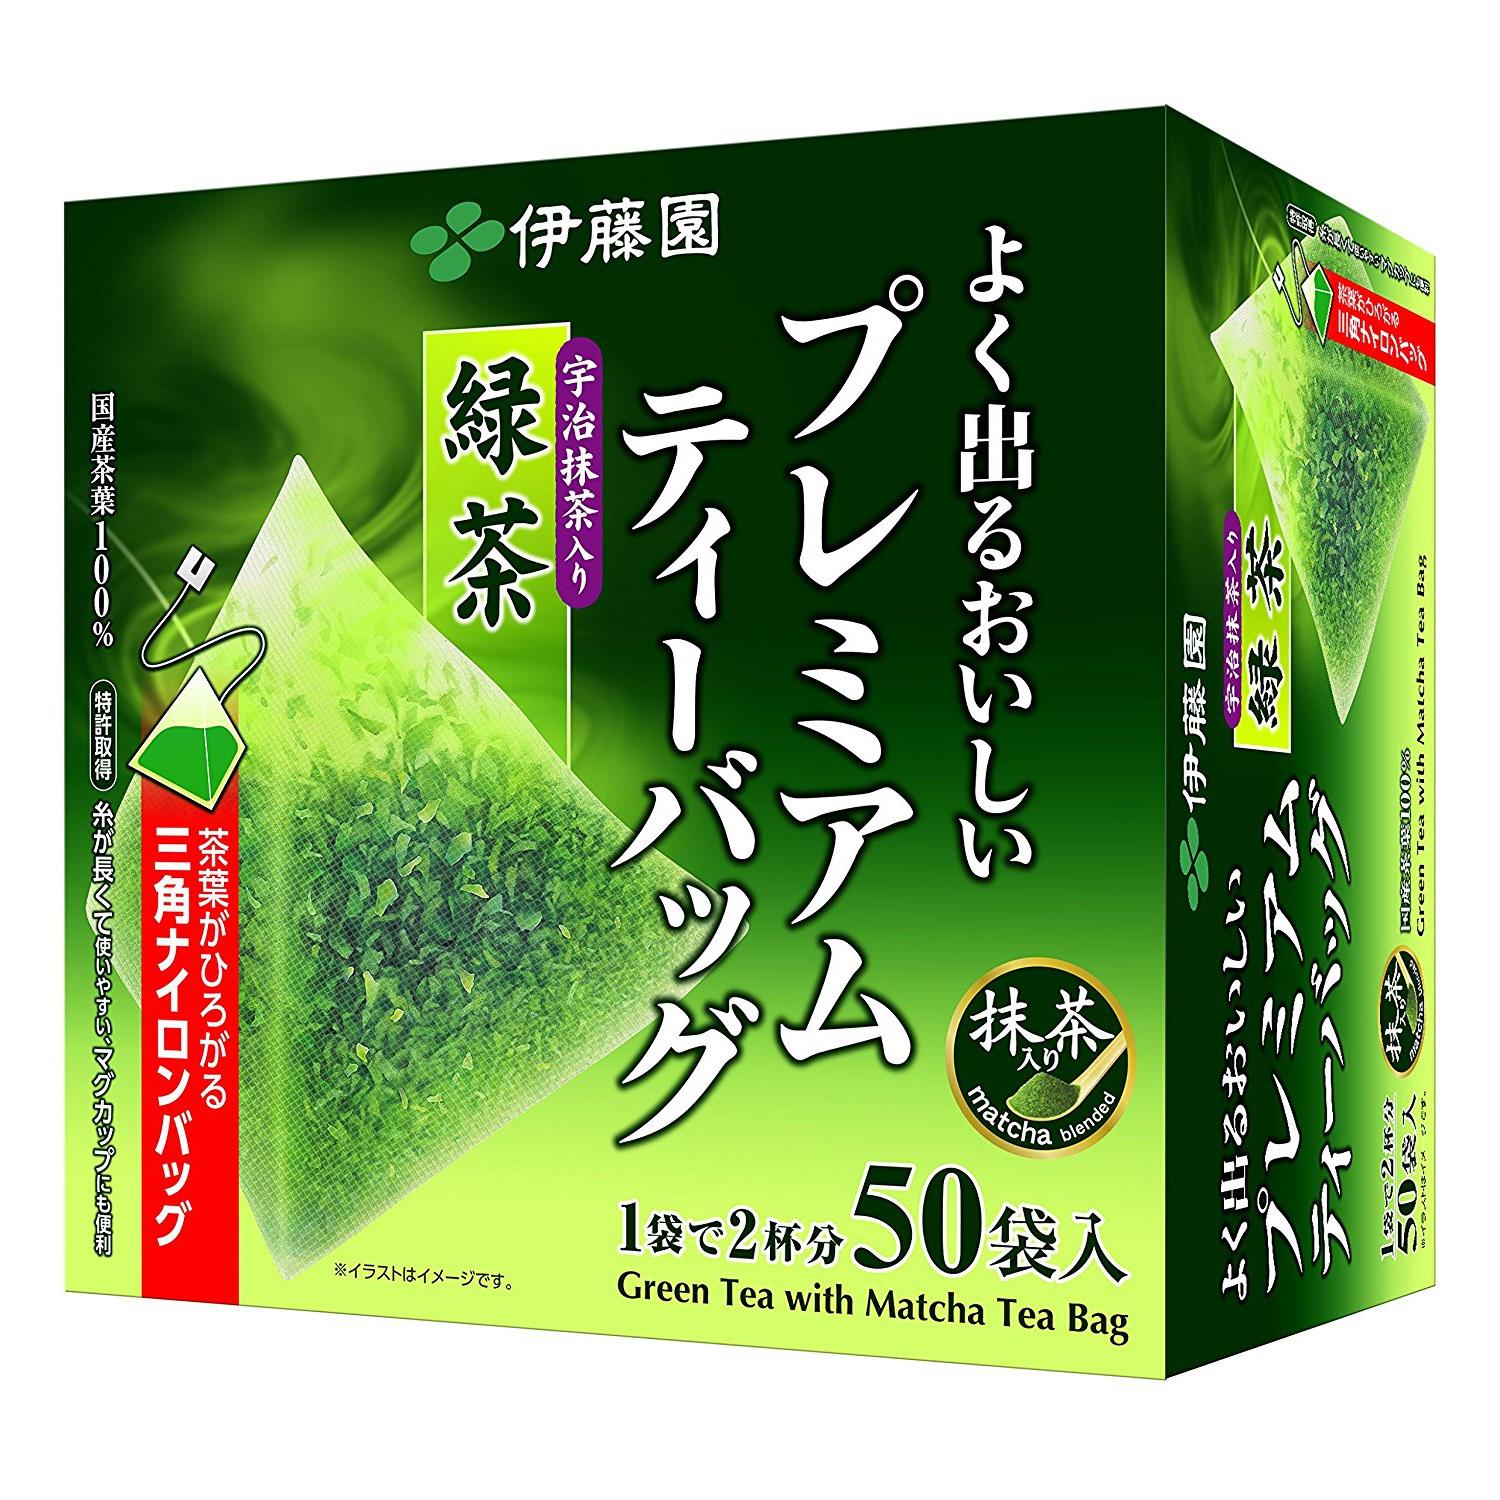 伊藤園 premium teabag 抹茶绿茶 50袋